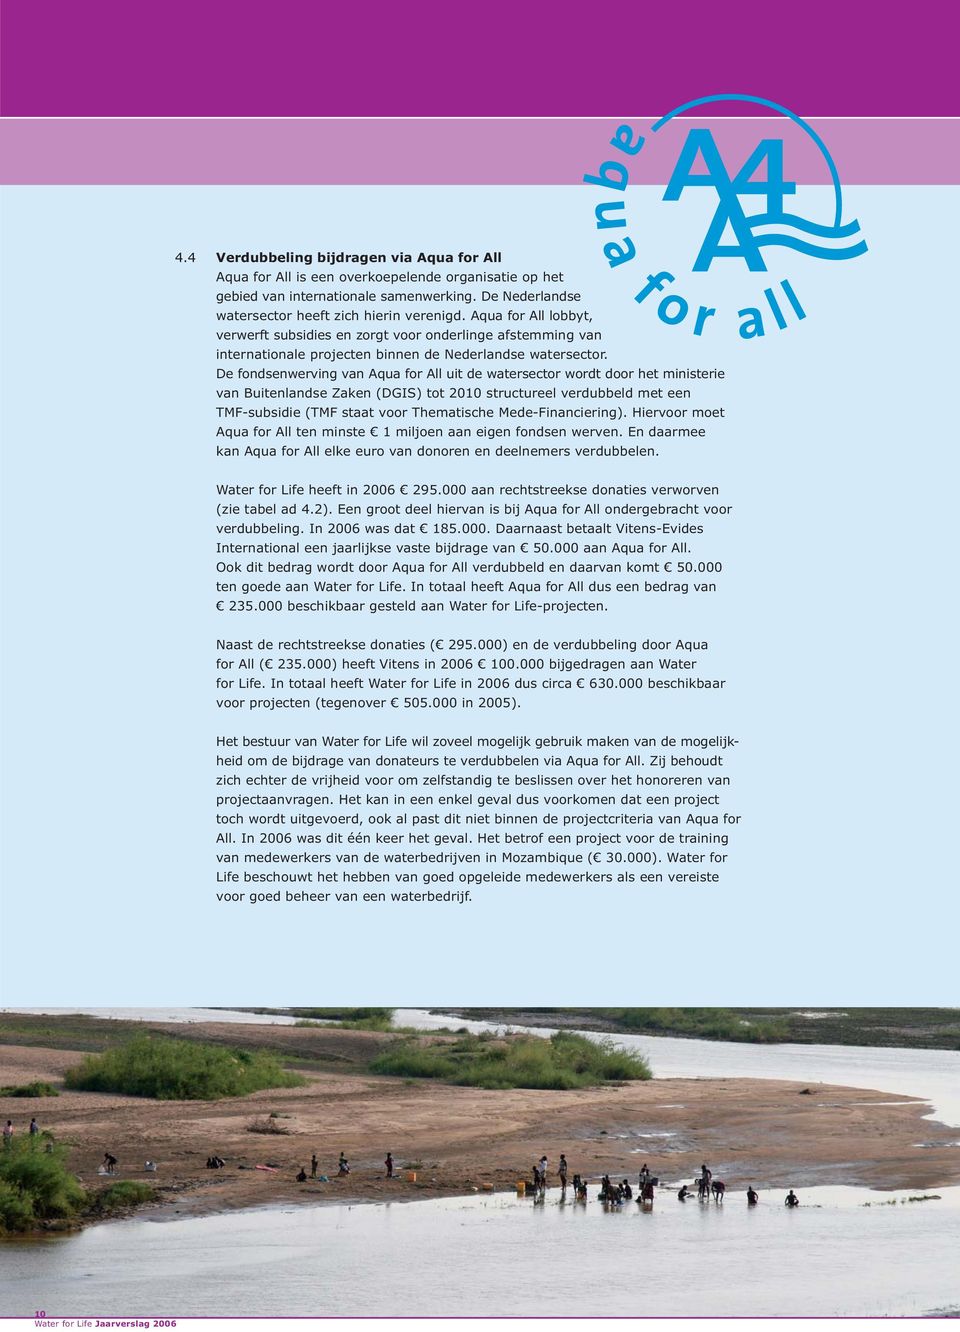 De fondsenwerving van Aqua for All uit de watersector wordt door het ministerie van Buitenlandse Zaken (DGIS) tot 2010 structureel verdubbeld met een TMF-subsidie (TMF staat voor Thematische